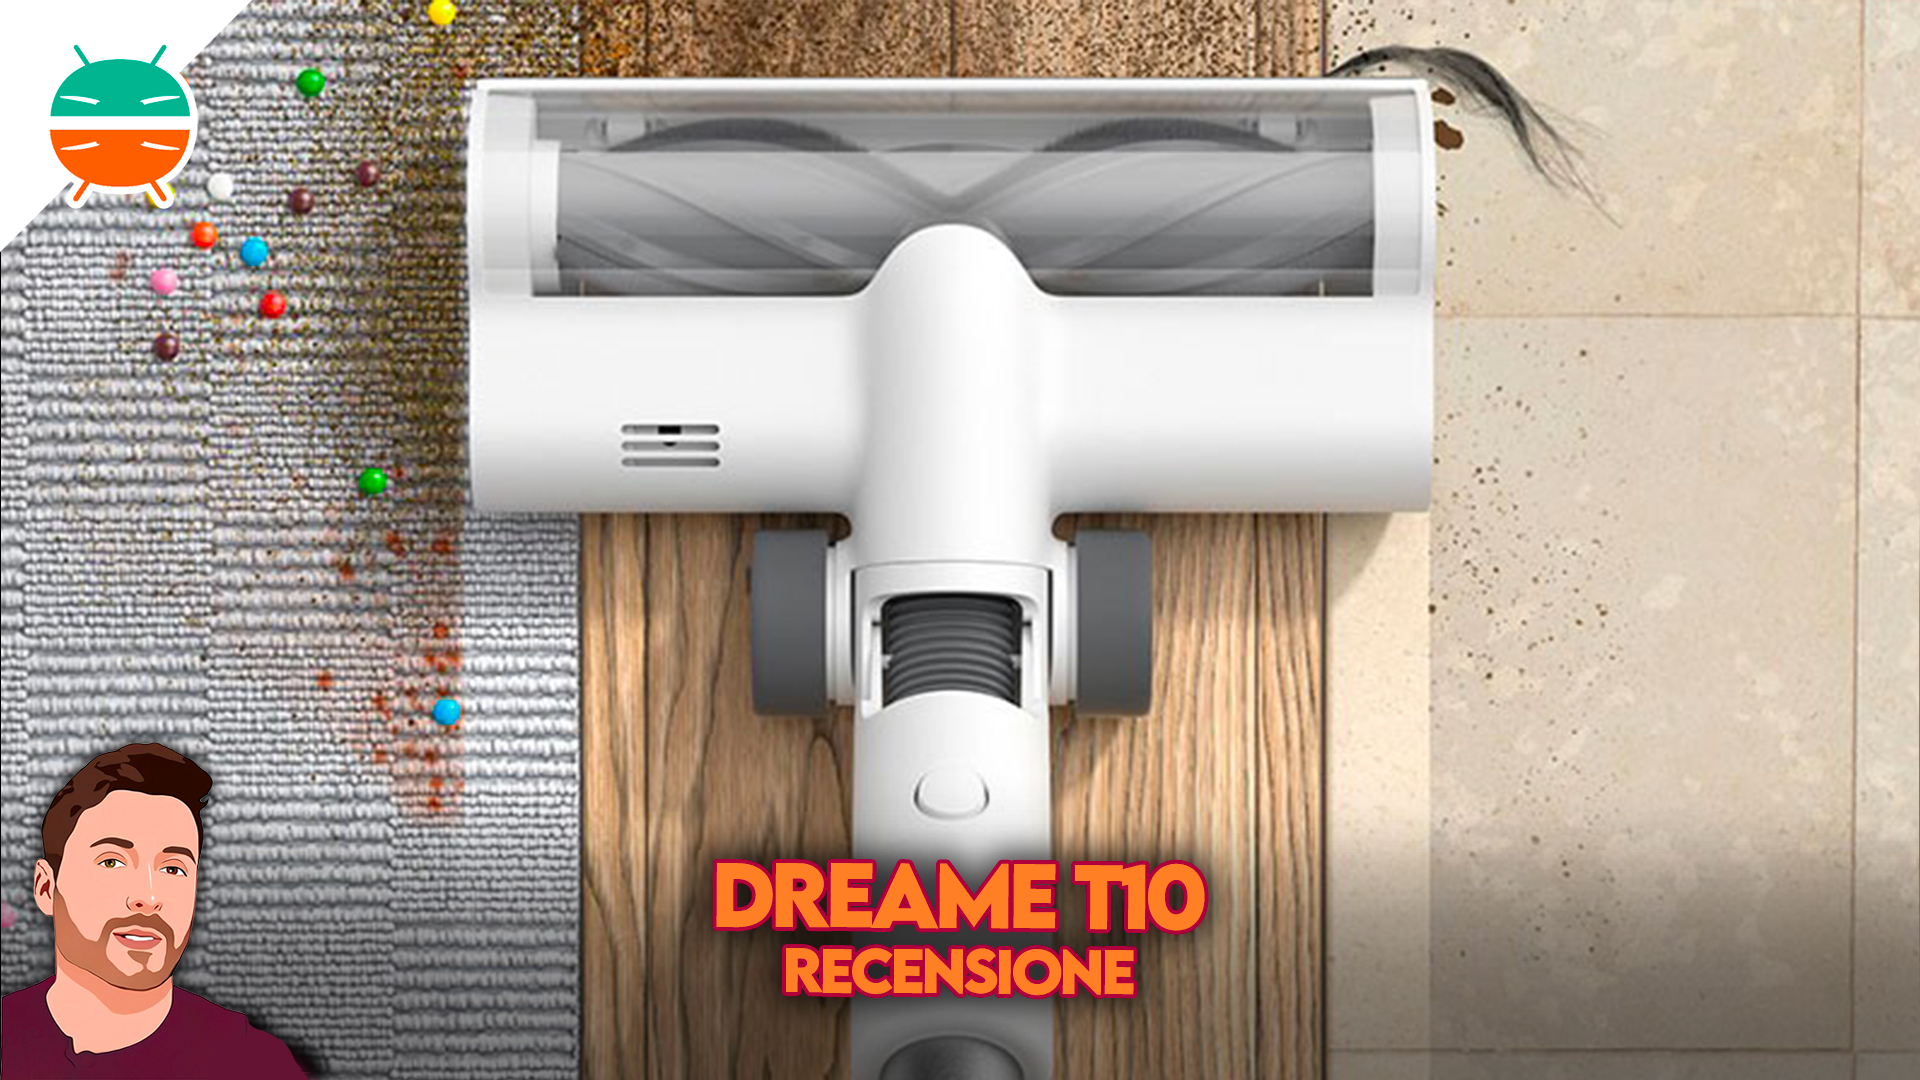 Dreame R20 Recensione: un aspirapolvere senza fili e senza compromessi